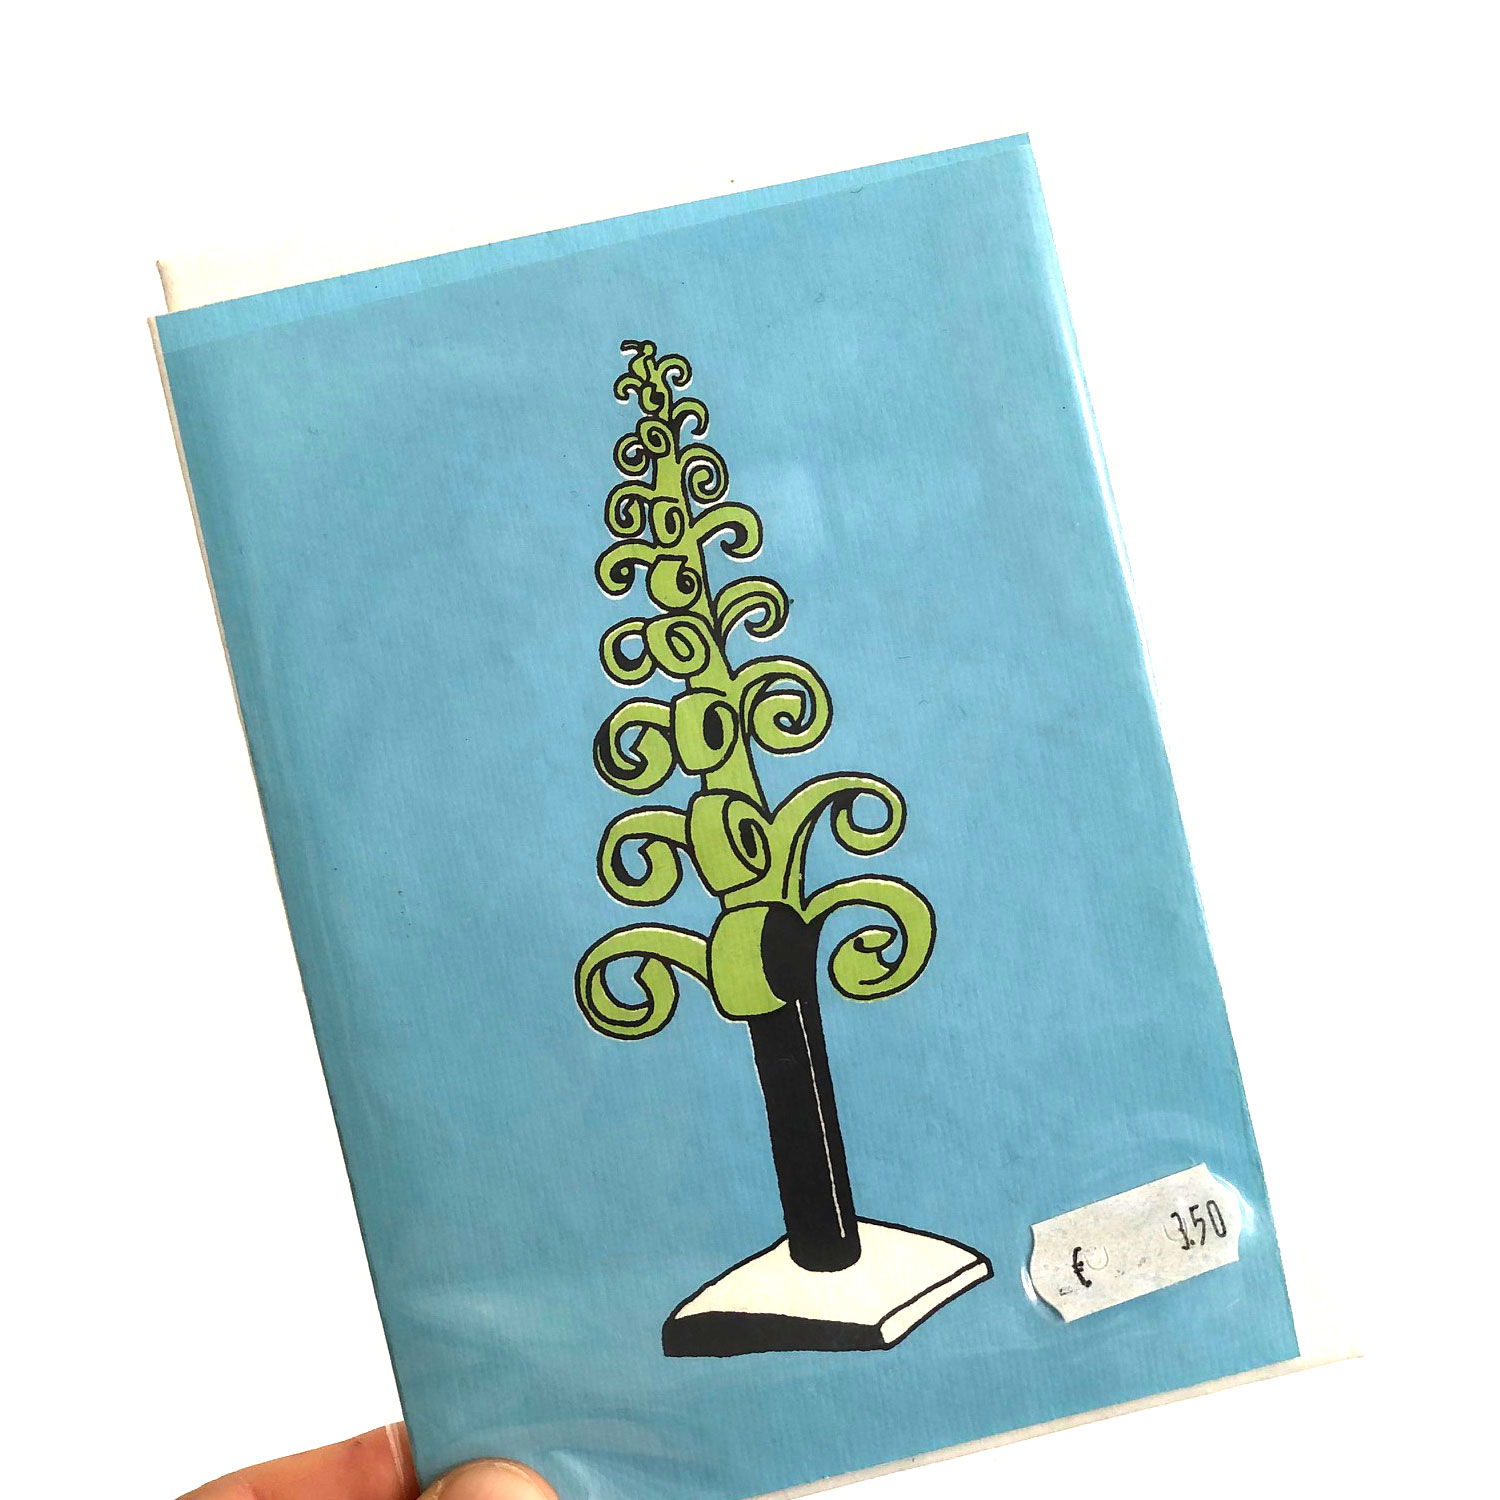 Doppelkarte Weihnachten "Baum Erzgebirge" von Salon Elfi aus Berlin